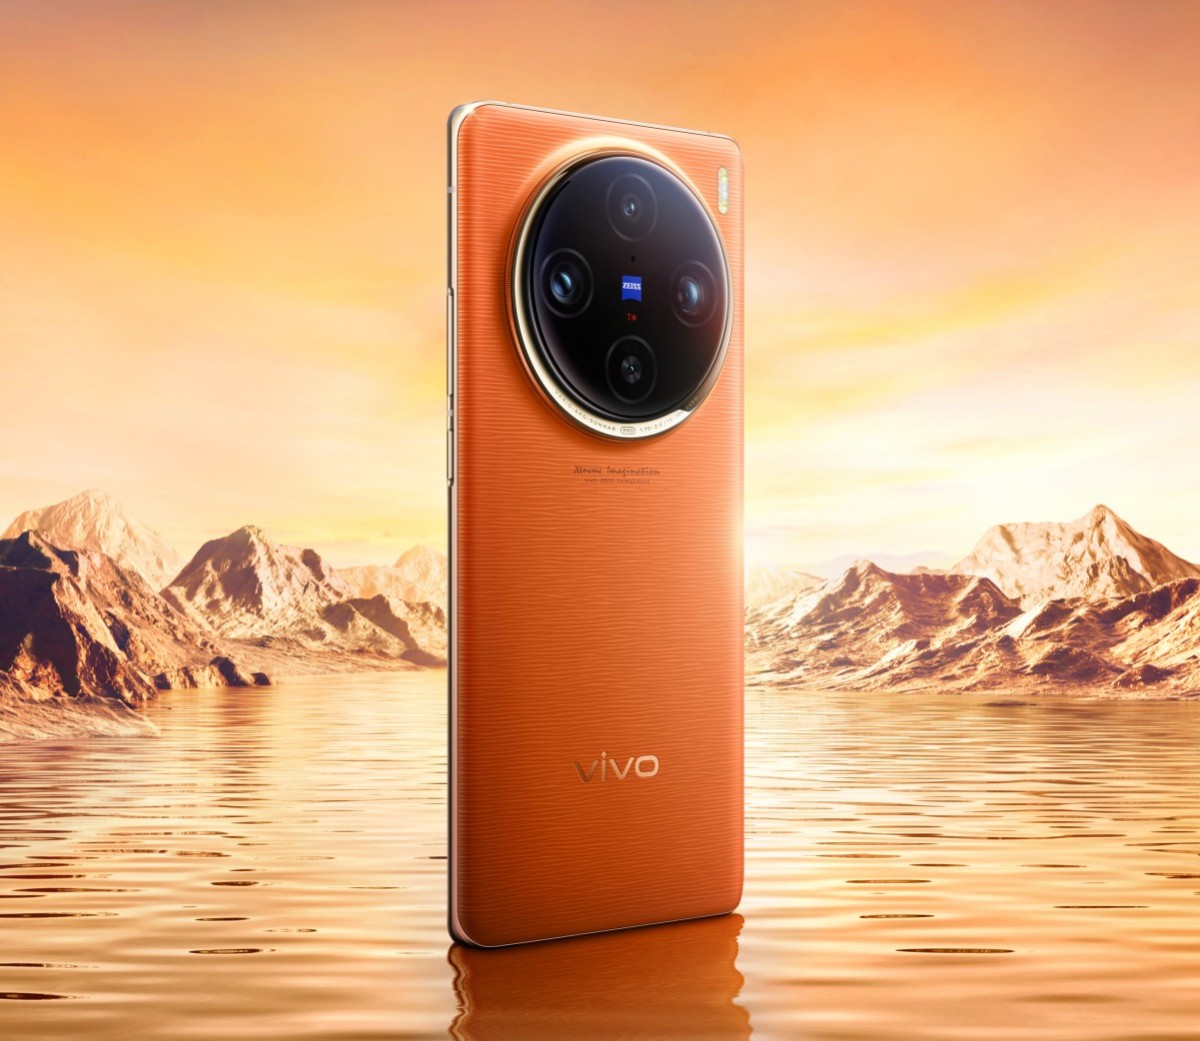 Vivo का न्यू ईयर धमका! मार्केट में Vivo X100 का हल्ला बोल, खरीदने से पहले जान लें दमदार फीचर्स और कीमत 